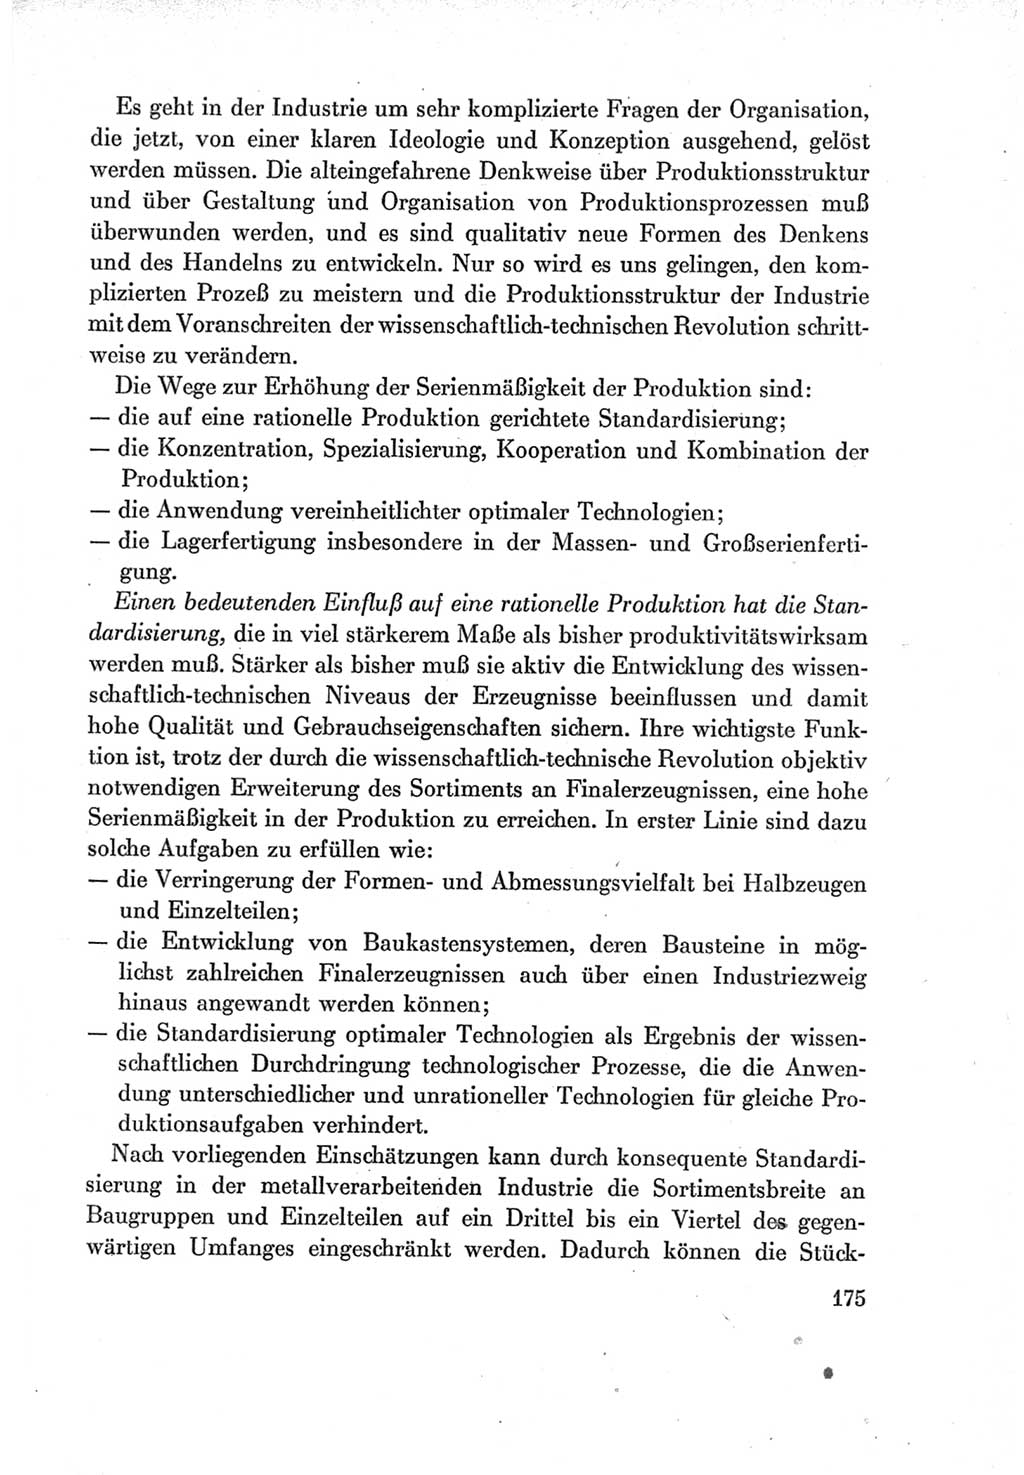 Protokoll der Verhandlungen des Ⅶ. Parteitages der Sozialistischen Einheitspartei Deutschlands (SED) [Deutsche Demokratische Republik (DDR)] 1967, Band Ⅰ, Seite 175 (Prot. Verh. Ⅶ. PT SED DDR 1967, Bd. Ⅰ, S. 175)